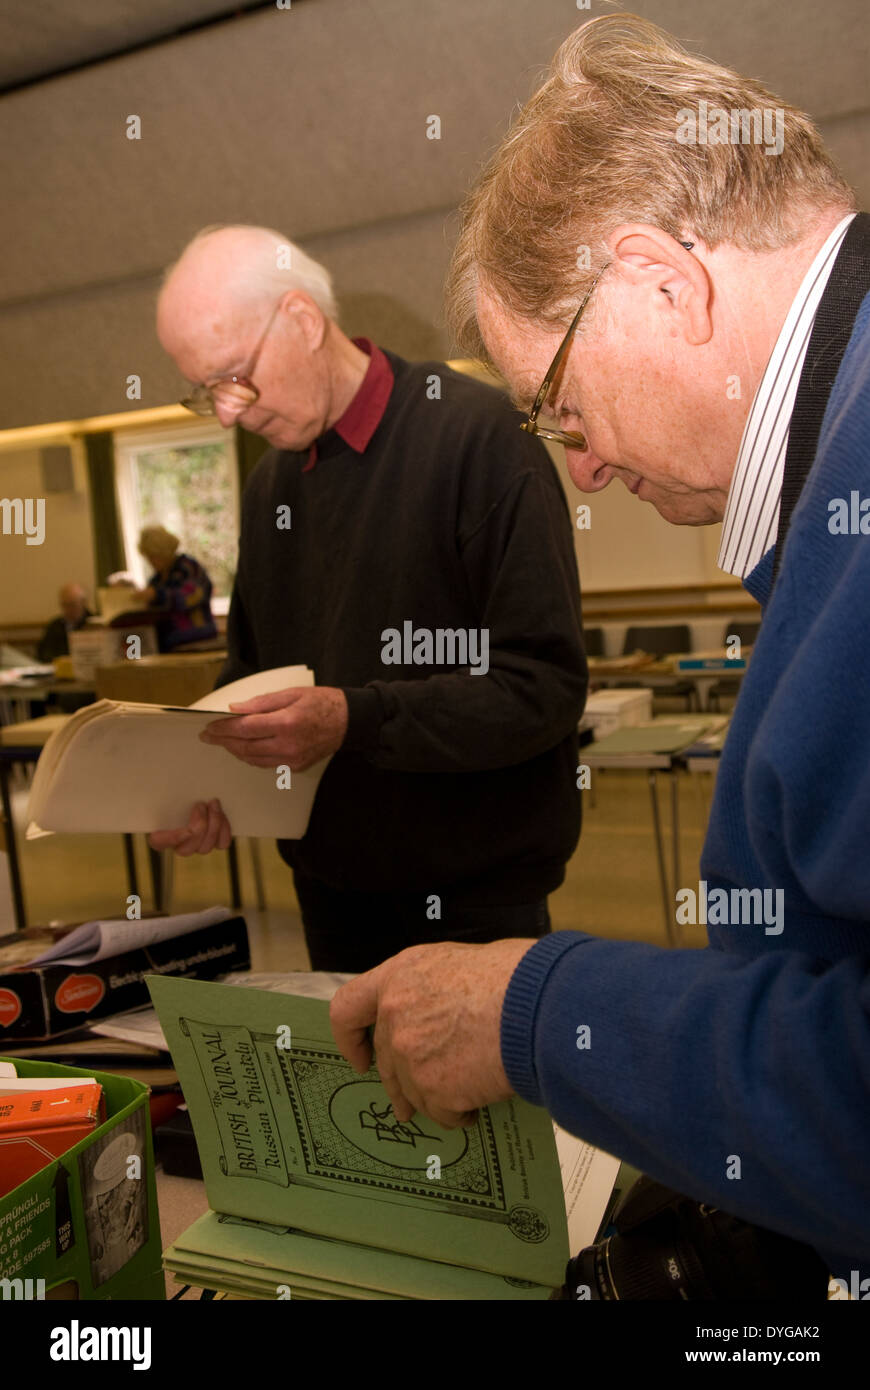 Uomini anziani che frequentano un timbro d'aste e che stanno curiosando elementi per essere venduto, petersfield, hampshire, Regno Unito. Foto Stock